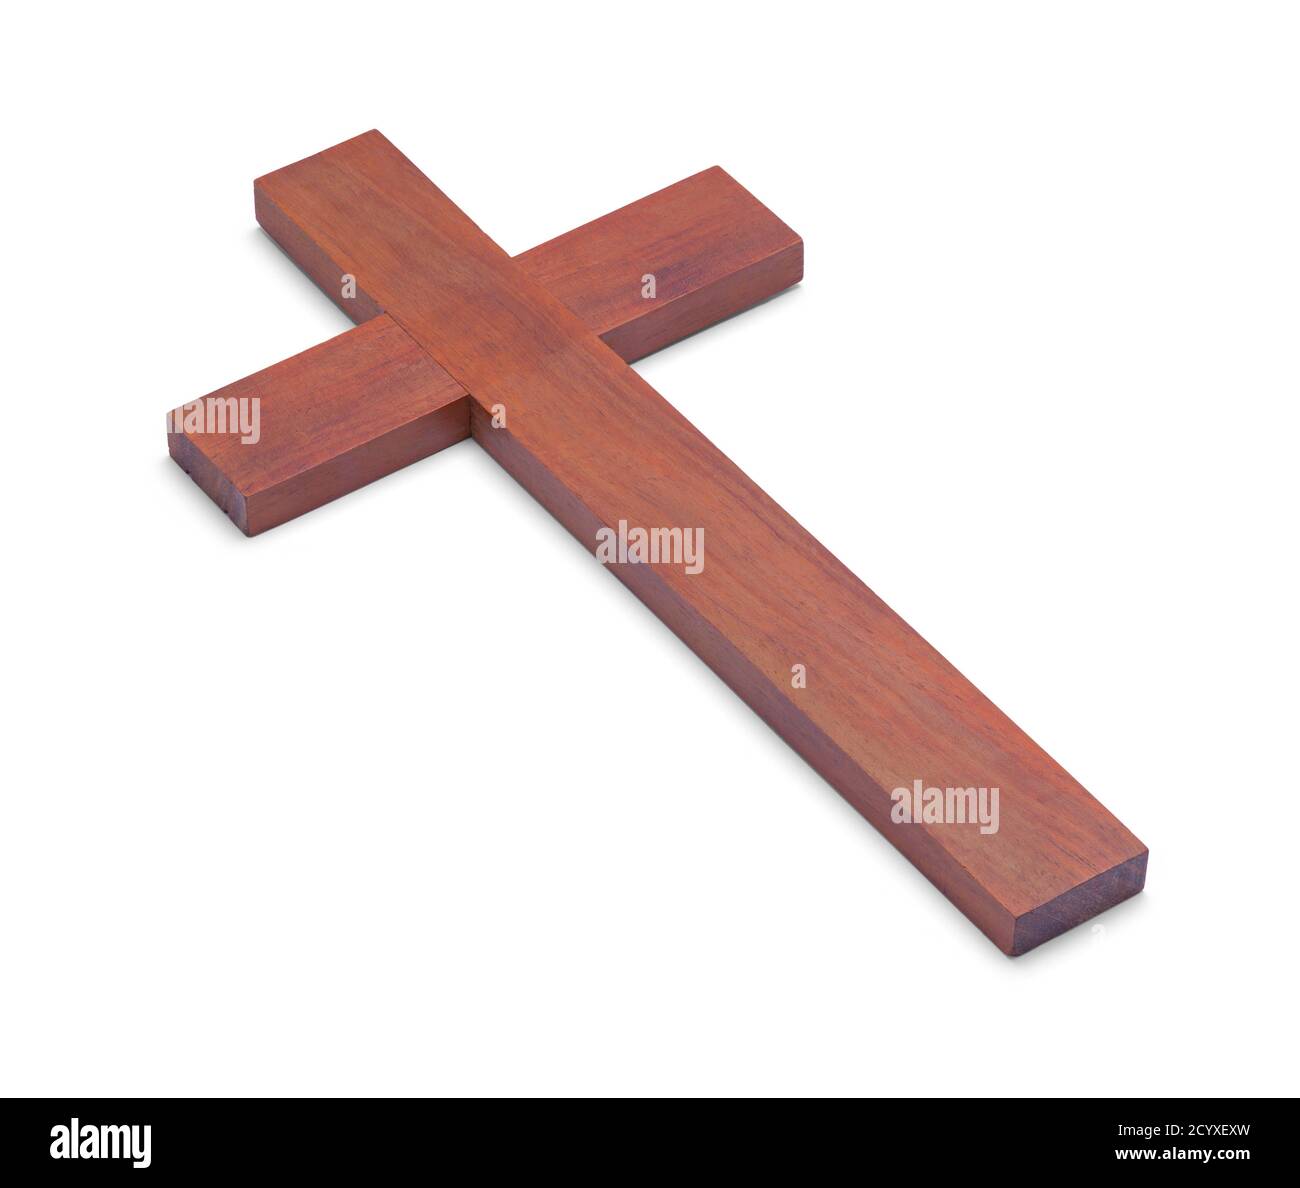 Cruz cristiana de madera aislada sobre fondo blanco. Foto de stock